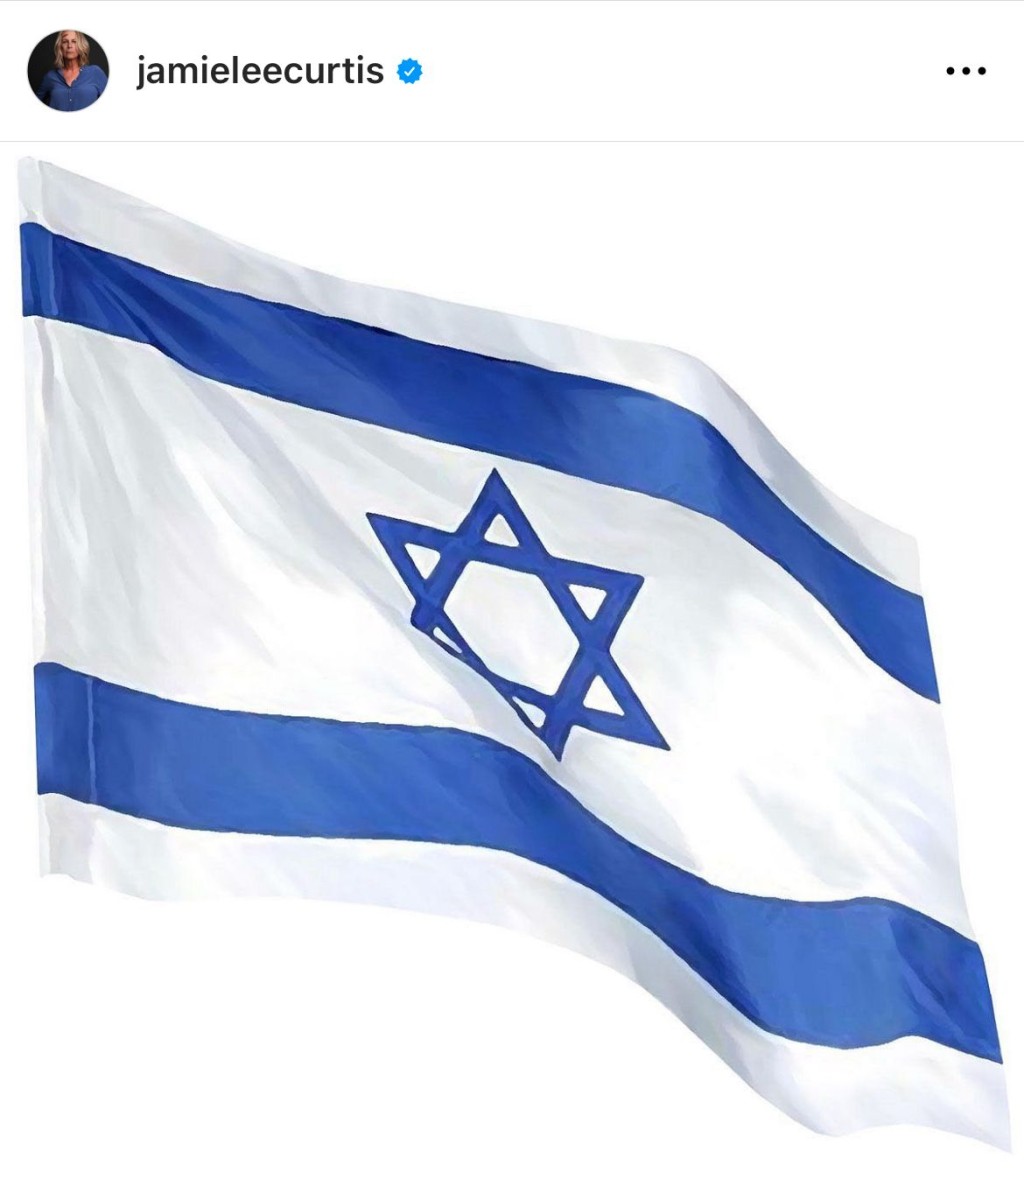 珍美李亦上载以色列国旗。